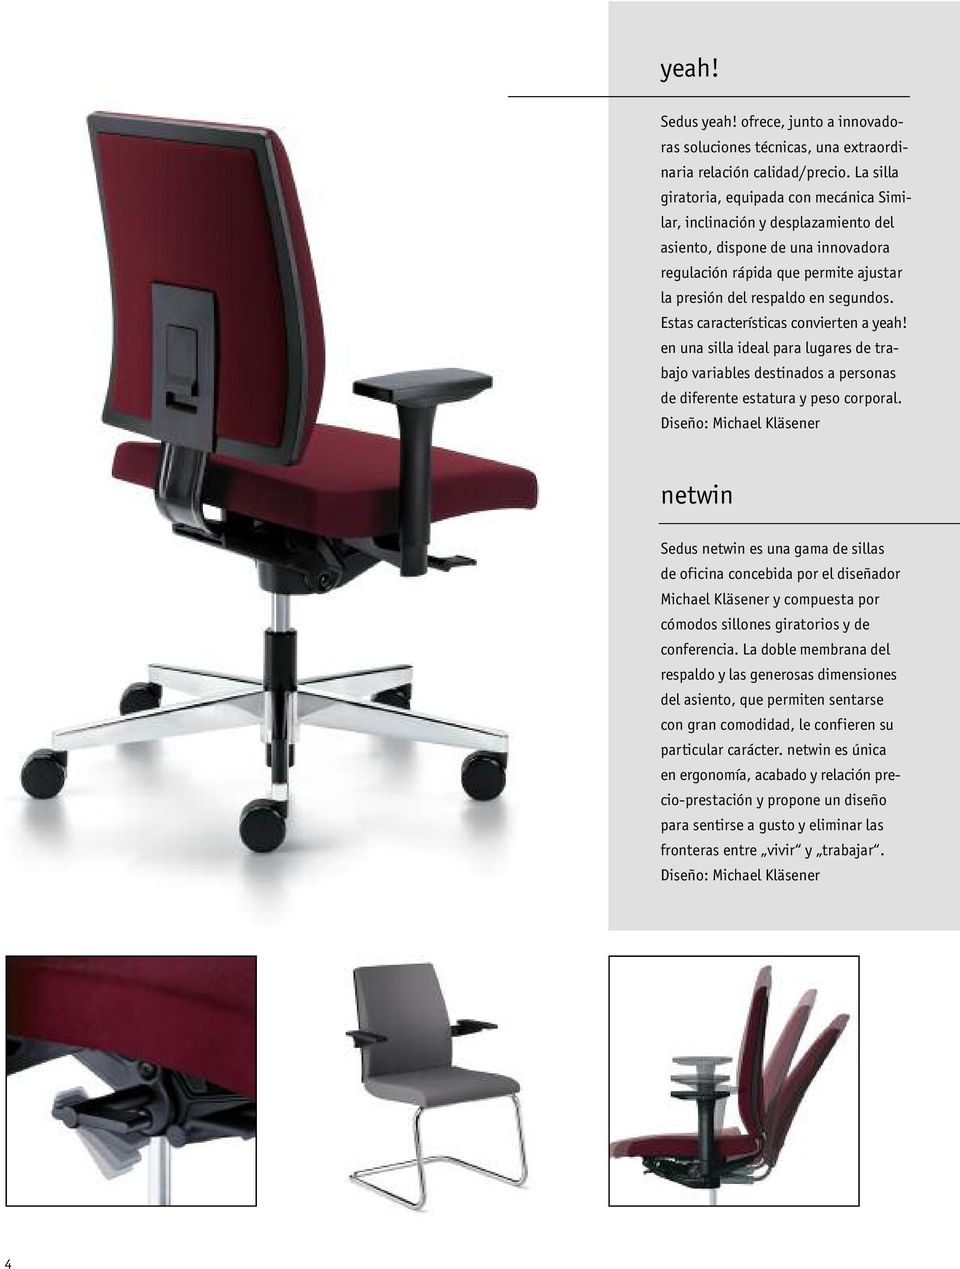 Estas características convierten a yeah! en una silla ideal para lugares de trabajo variables destinados a personas de diferente estatura y peso corporal.